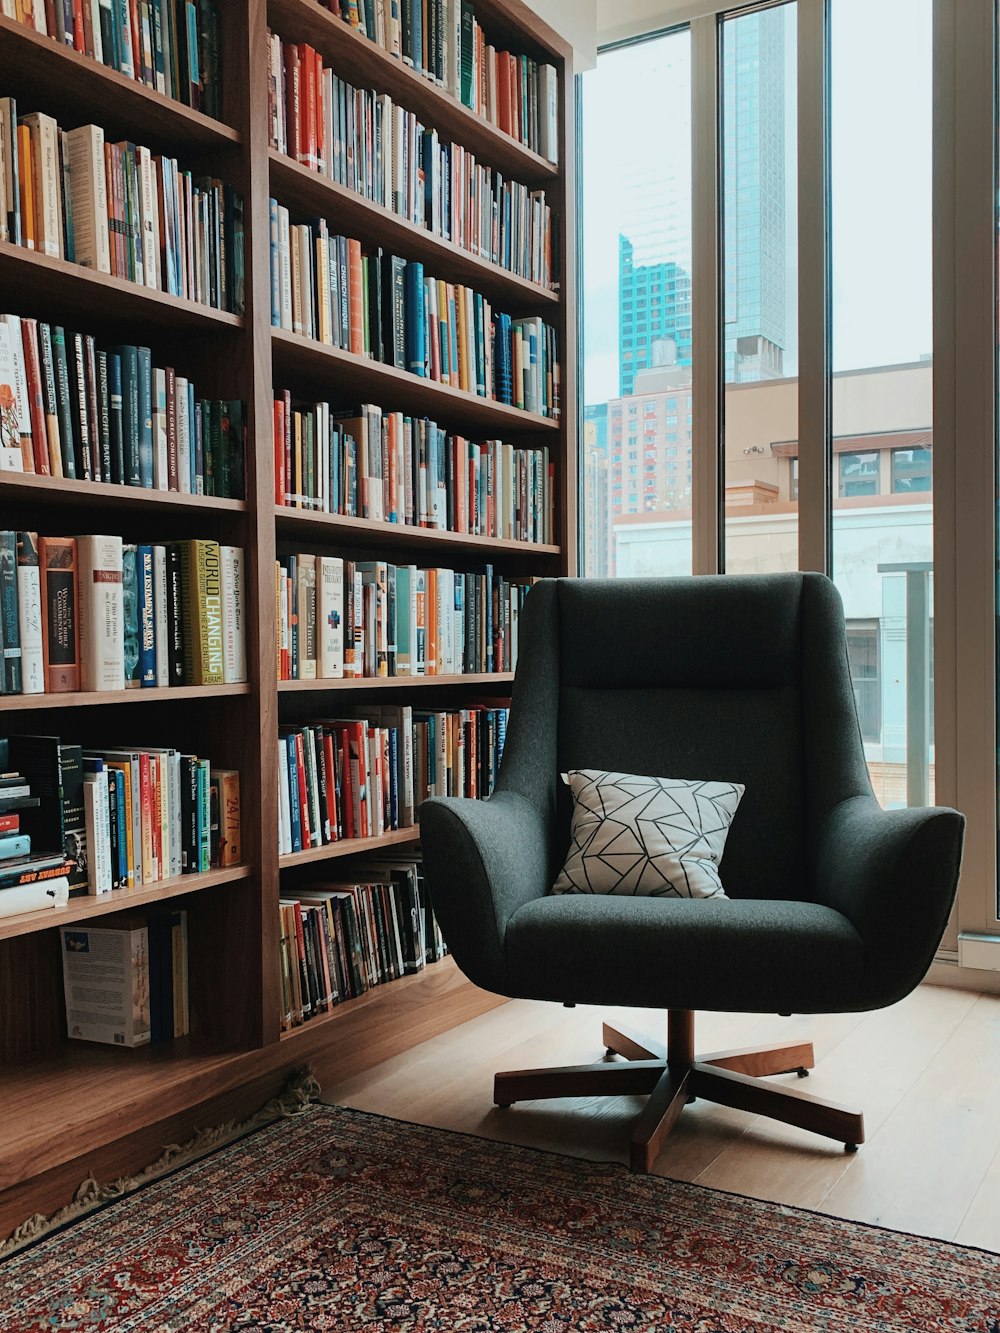 sillón rodante acolchado de tela gris cerca de libros